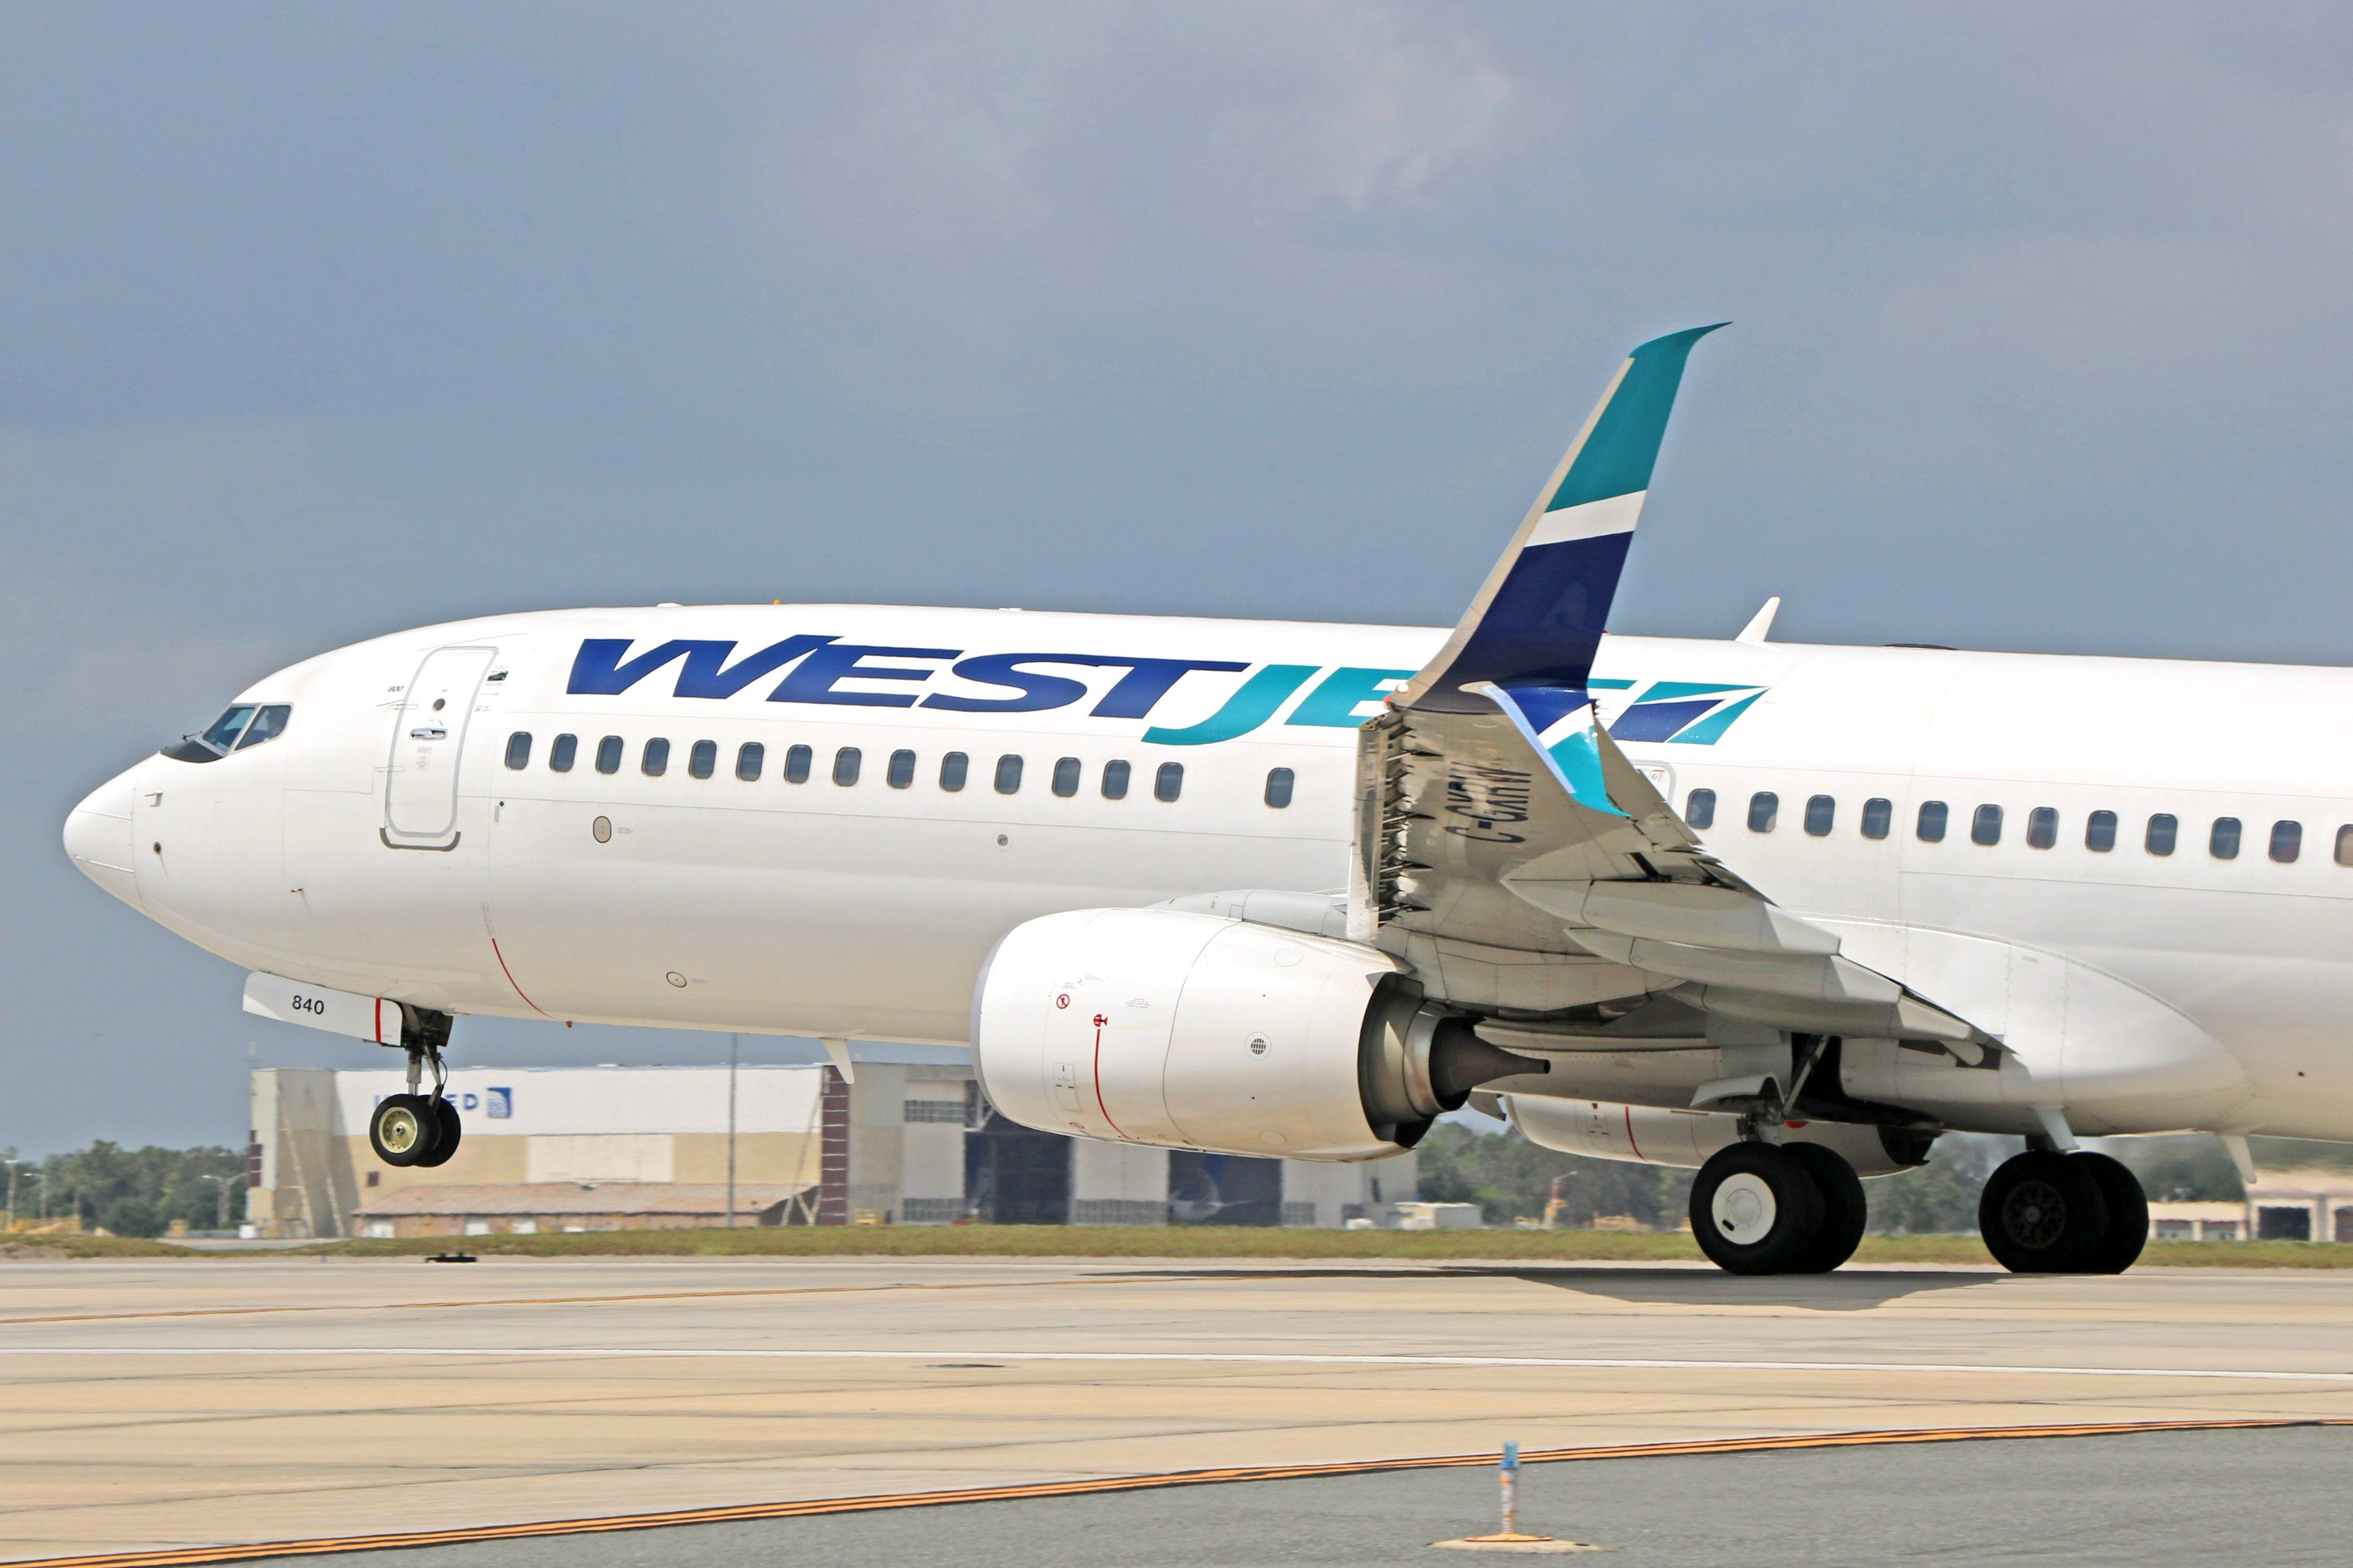 WestJet Boeing 737 landing at Orlando International Airport.